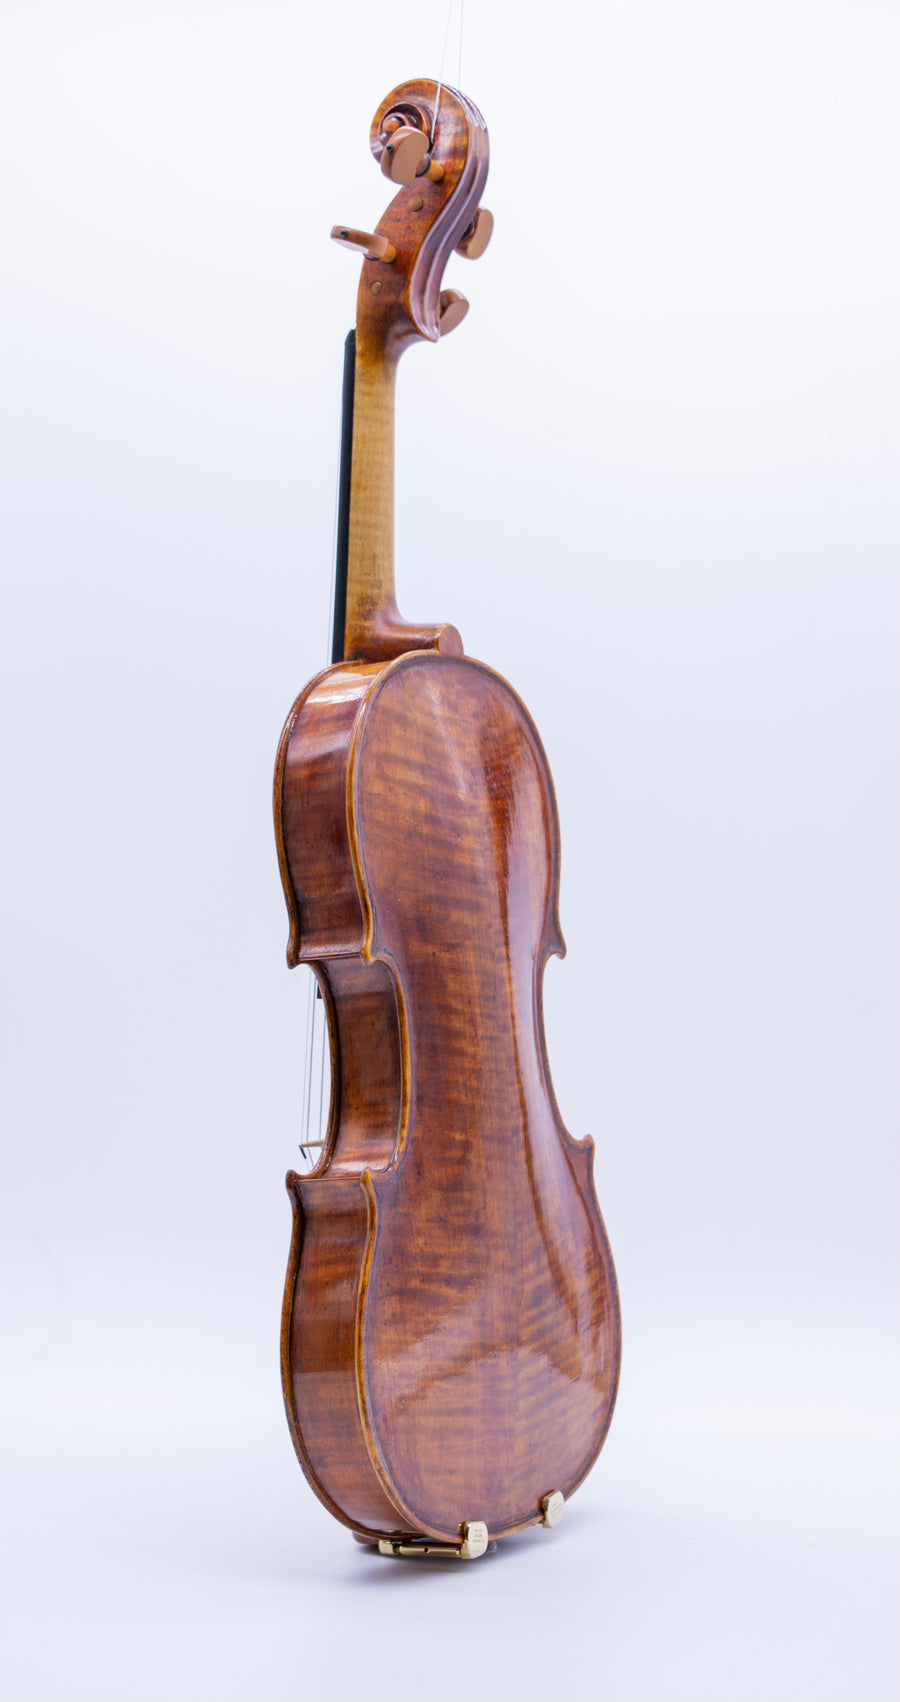 A Fine Contemporary Italian Violin After Balestrieri By Elisa Scrollaveza.